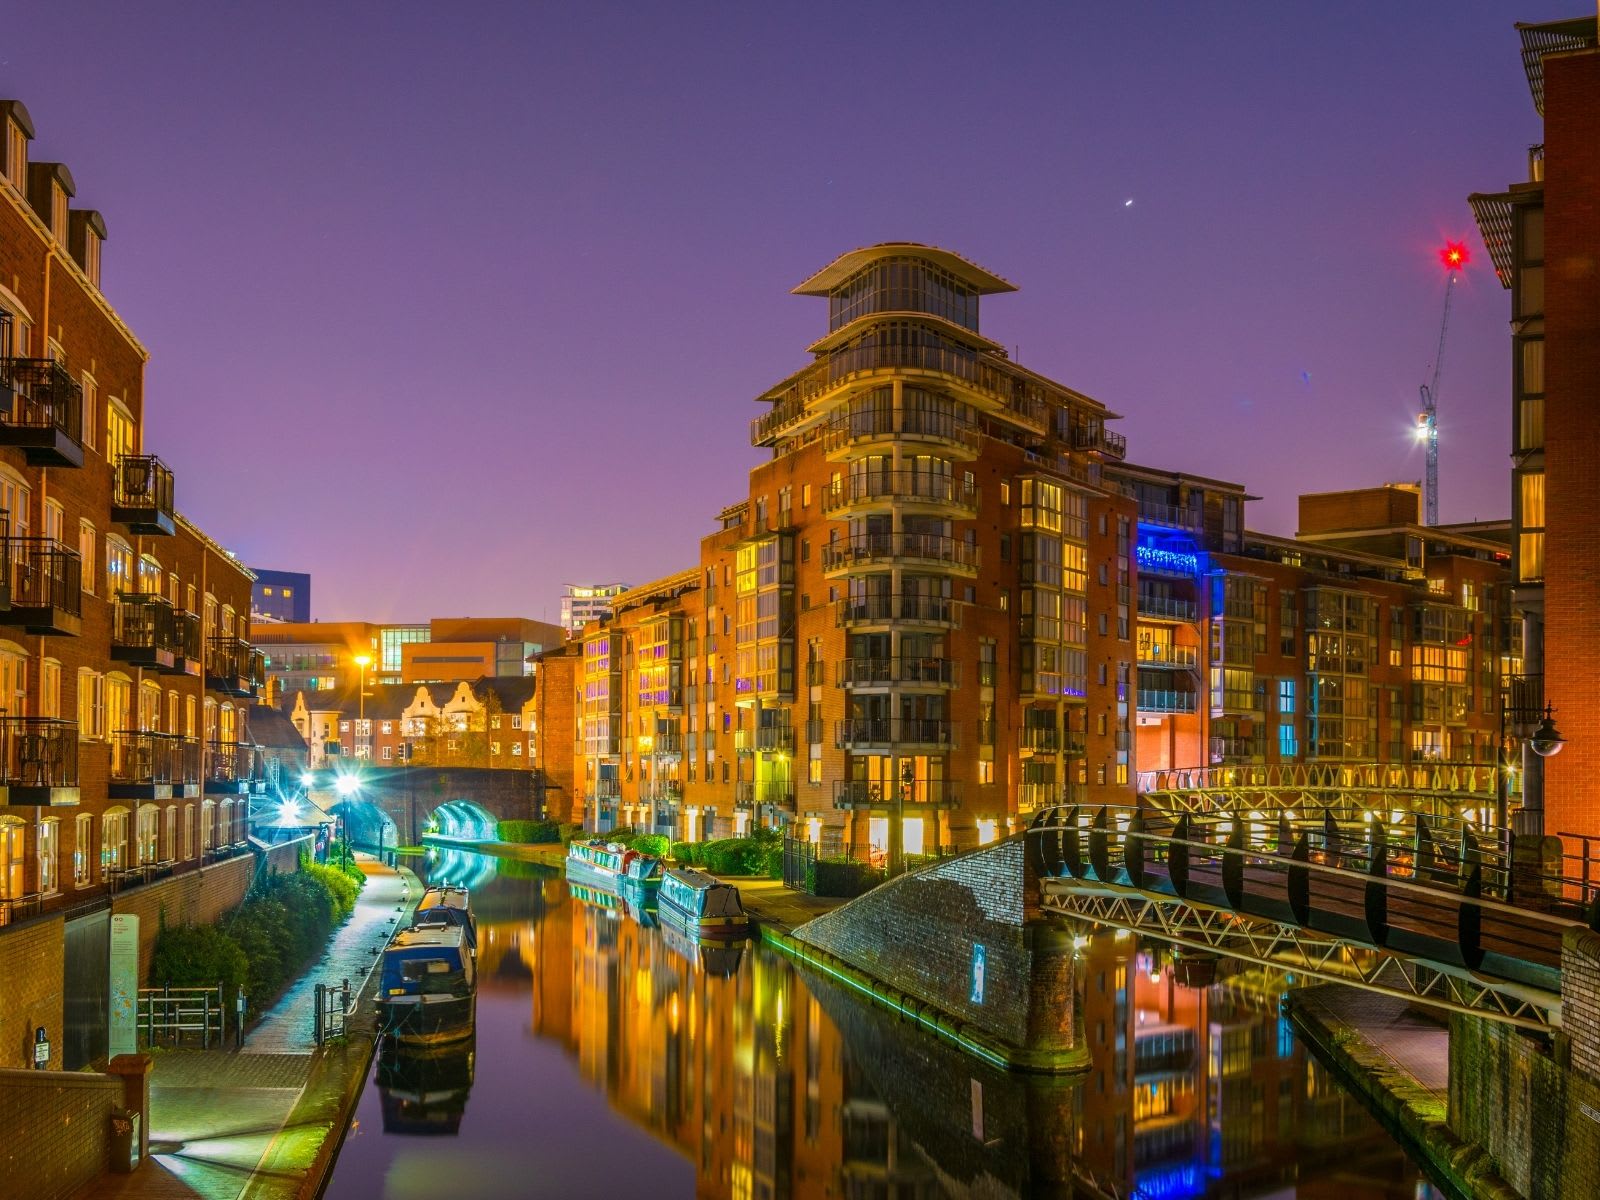 Night view of buildings alongside a water channel, Birmingham